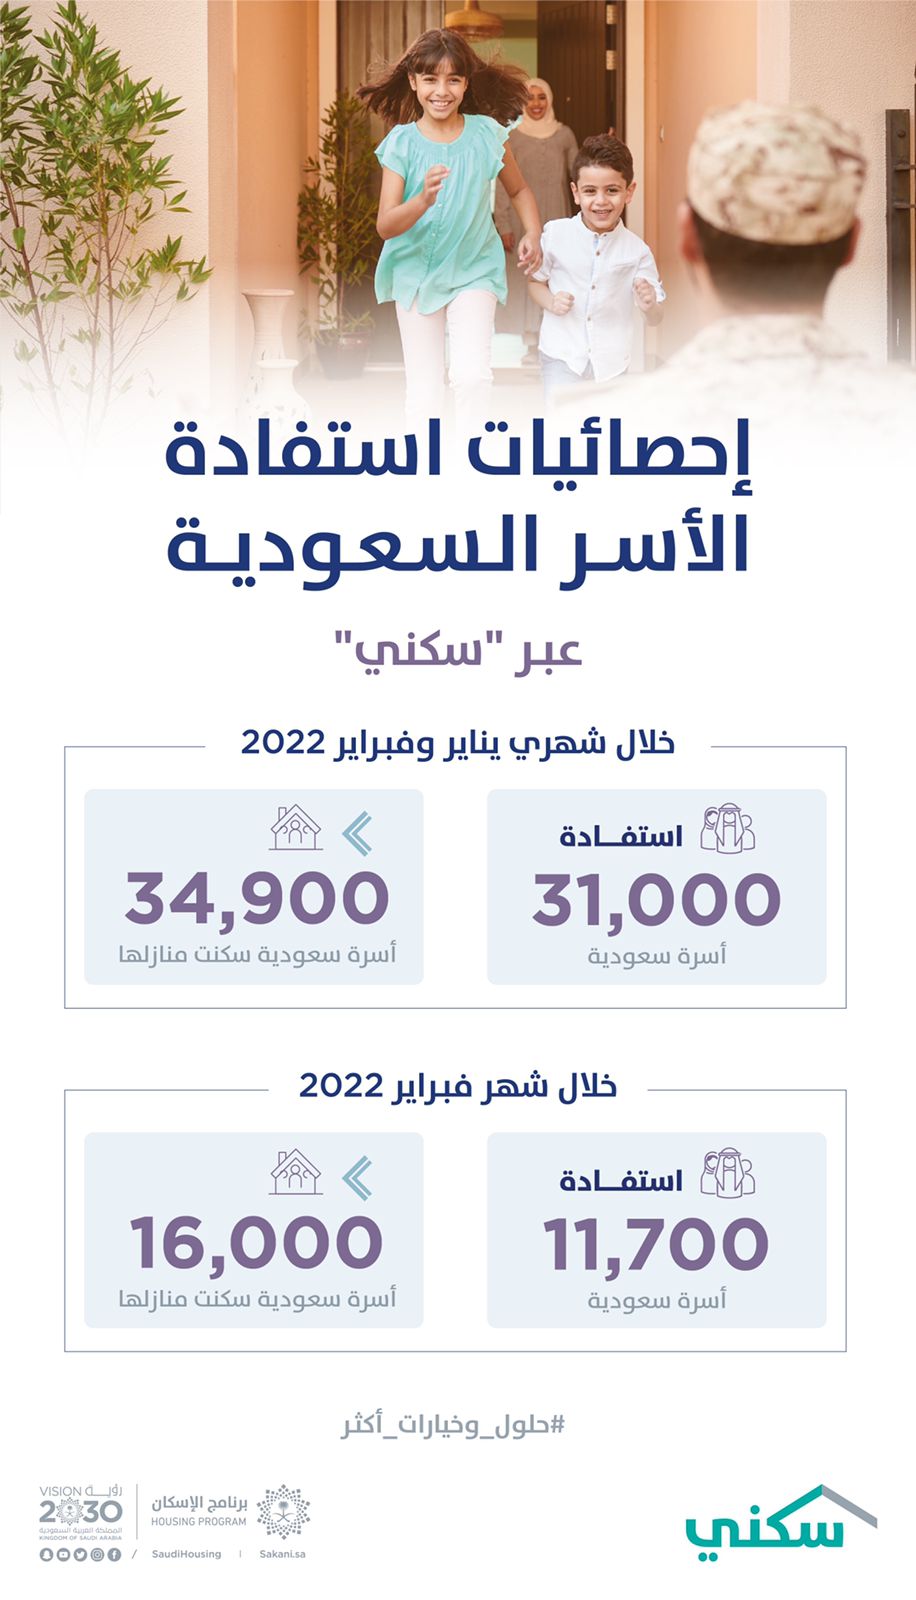 “سكني” يعلن استفادة 31 ألف أسرة سعودية من خياراته خلال شهرين